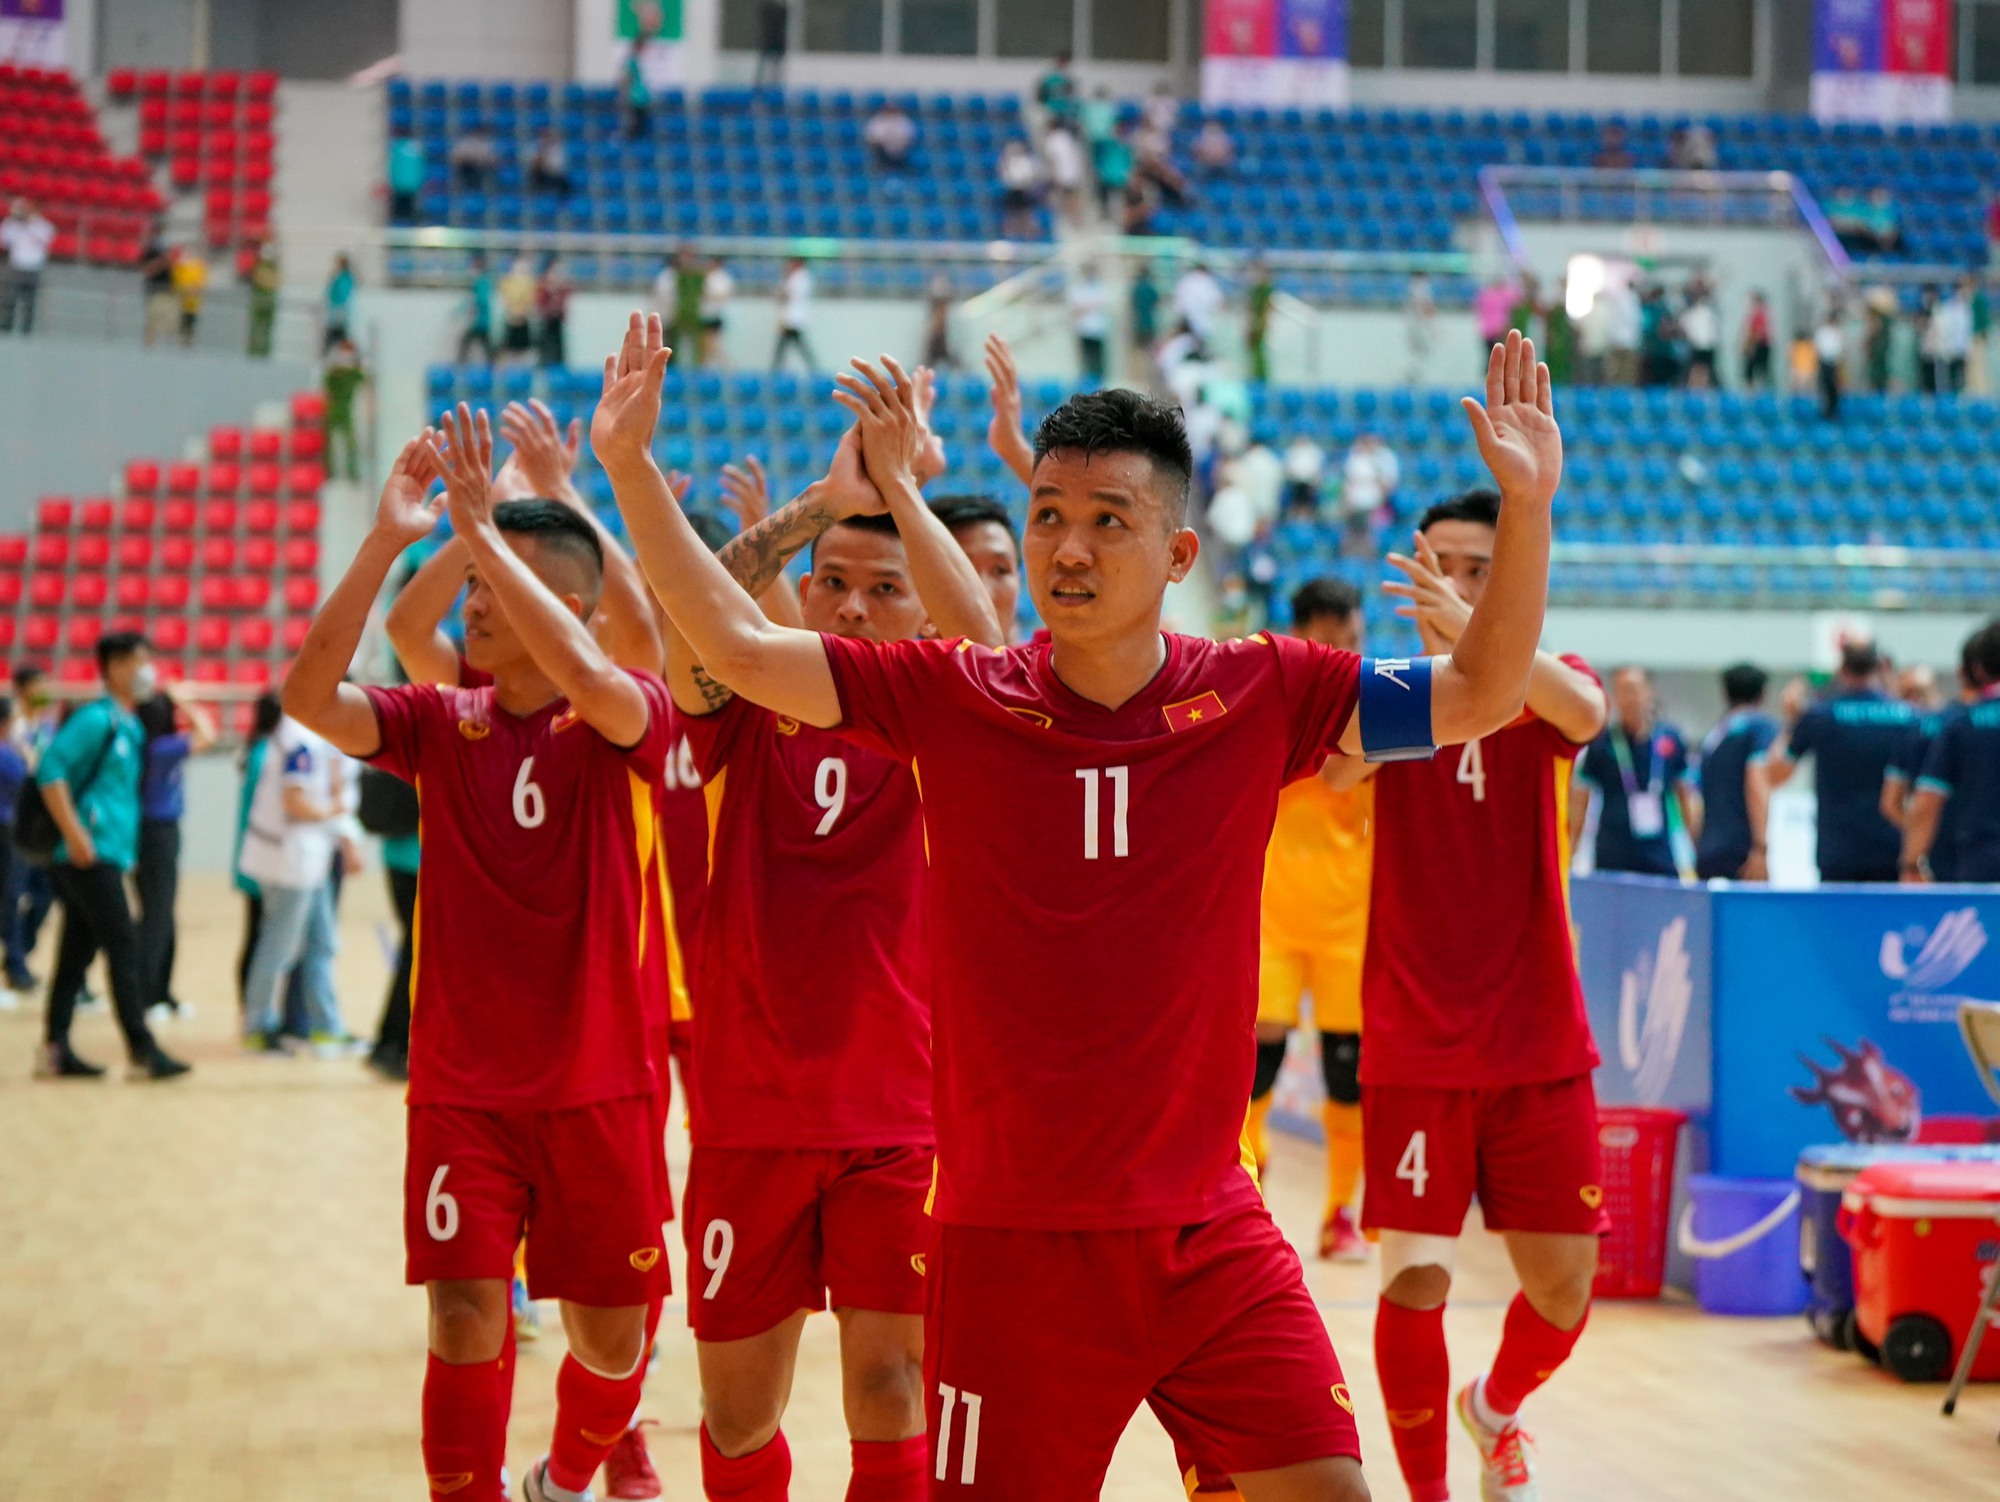 Cầu thủ xuất sắc của futsal Việt Nam tiết lộ lý do giải nghệ - Ảnh 1.